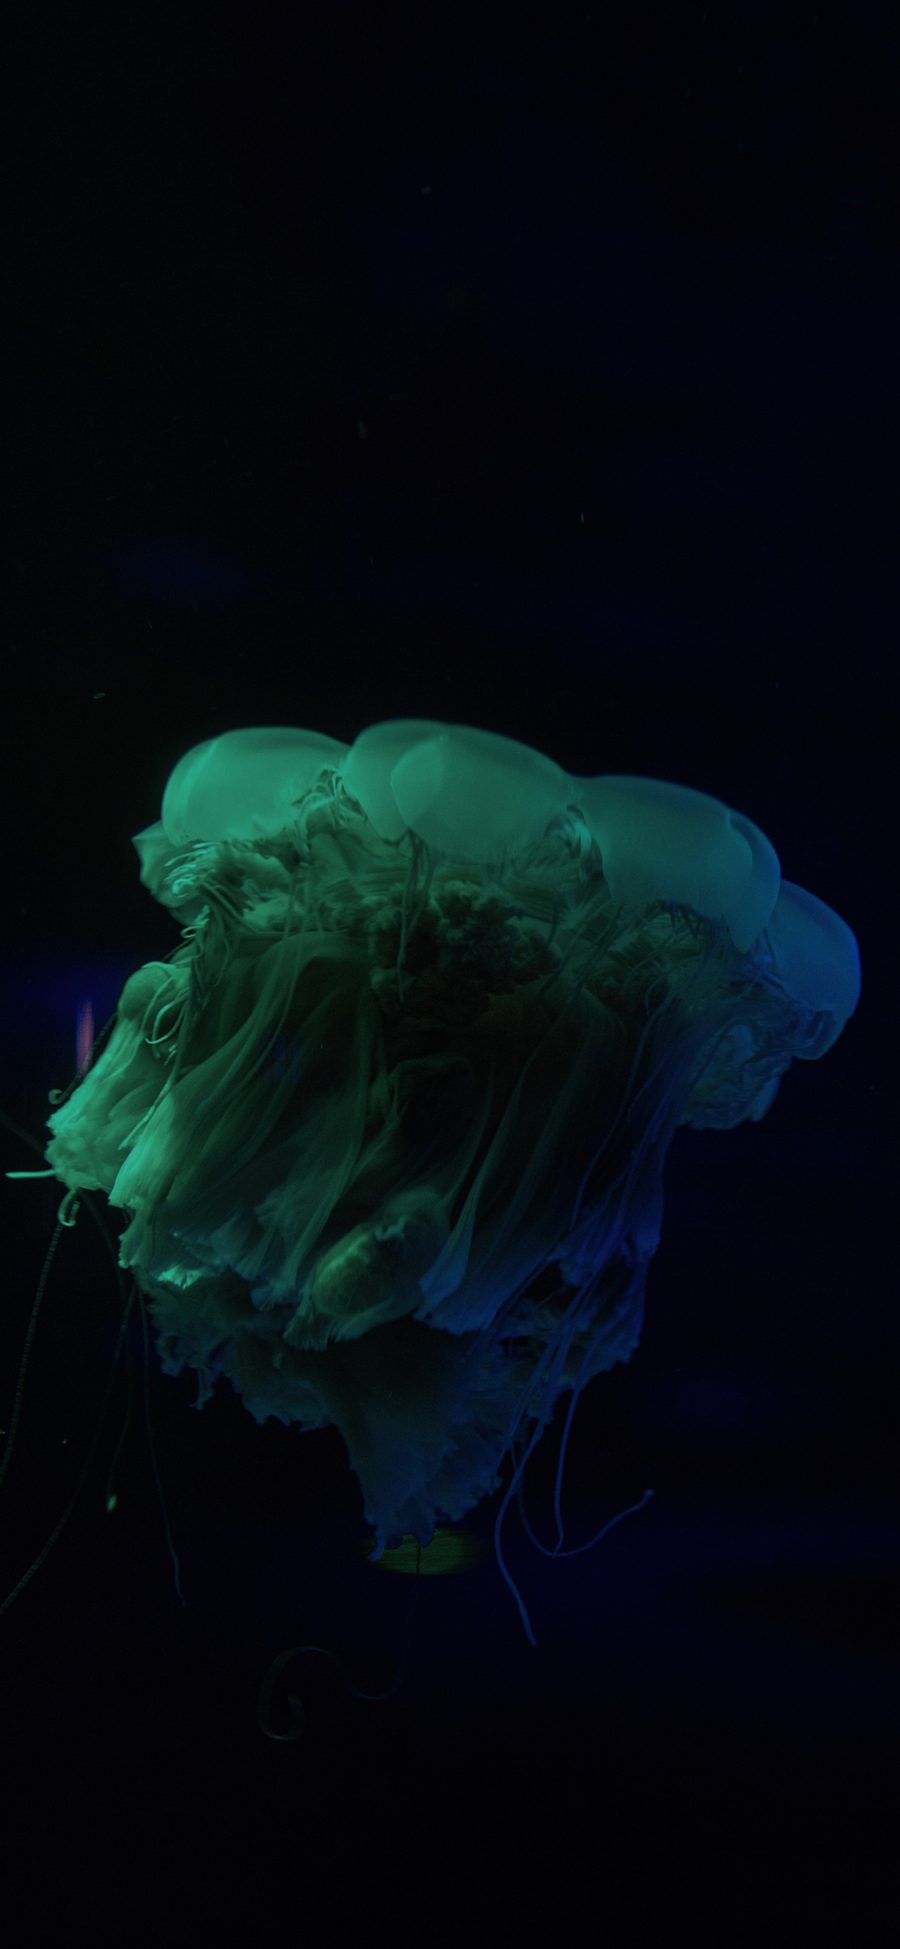 [2436×1125]水母 海洋生物 蓝色 透明 游动 黑色 苹果手机壁纸图片